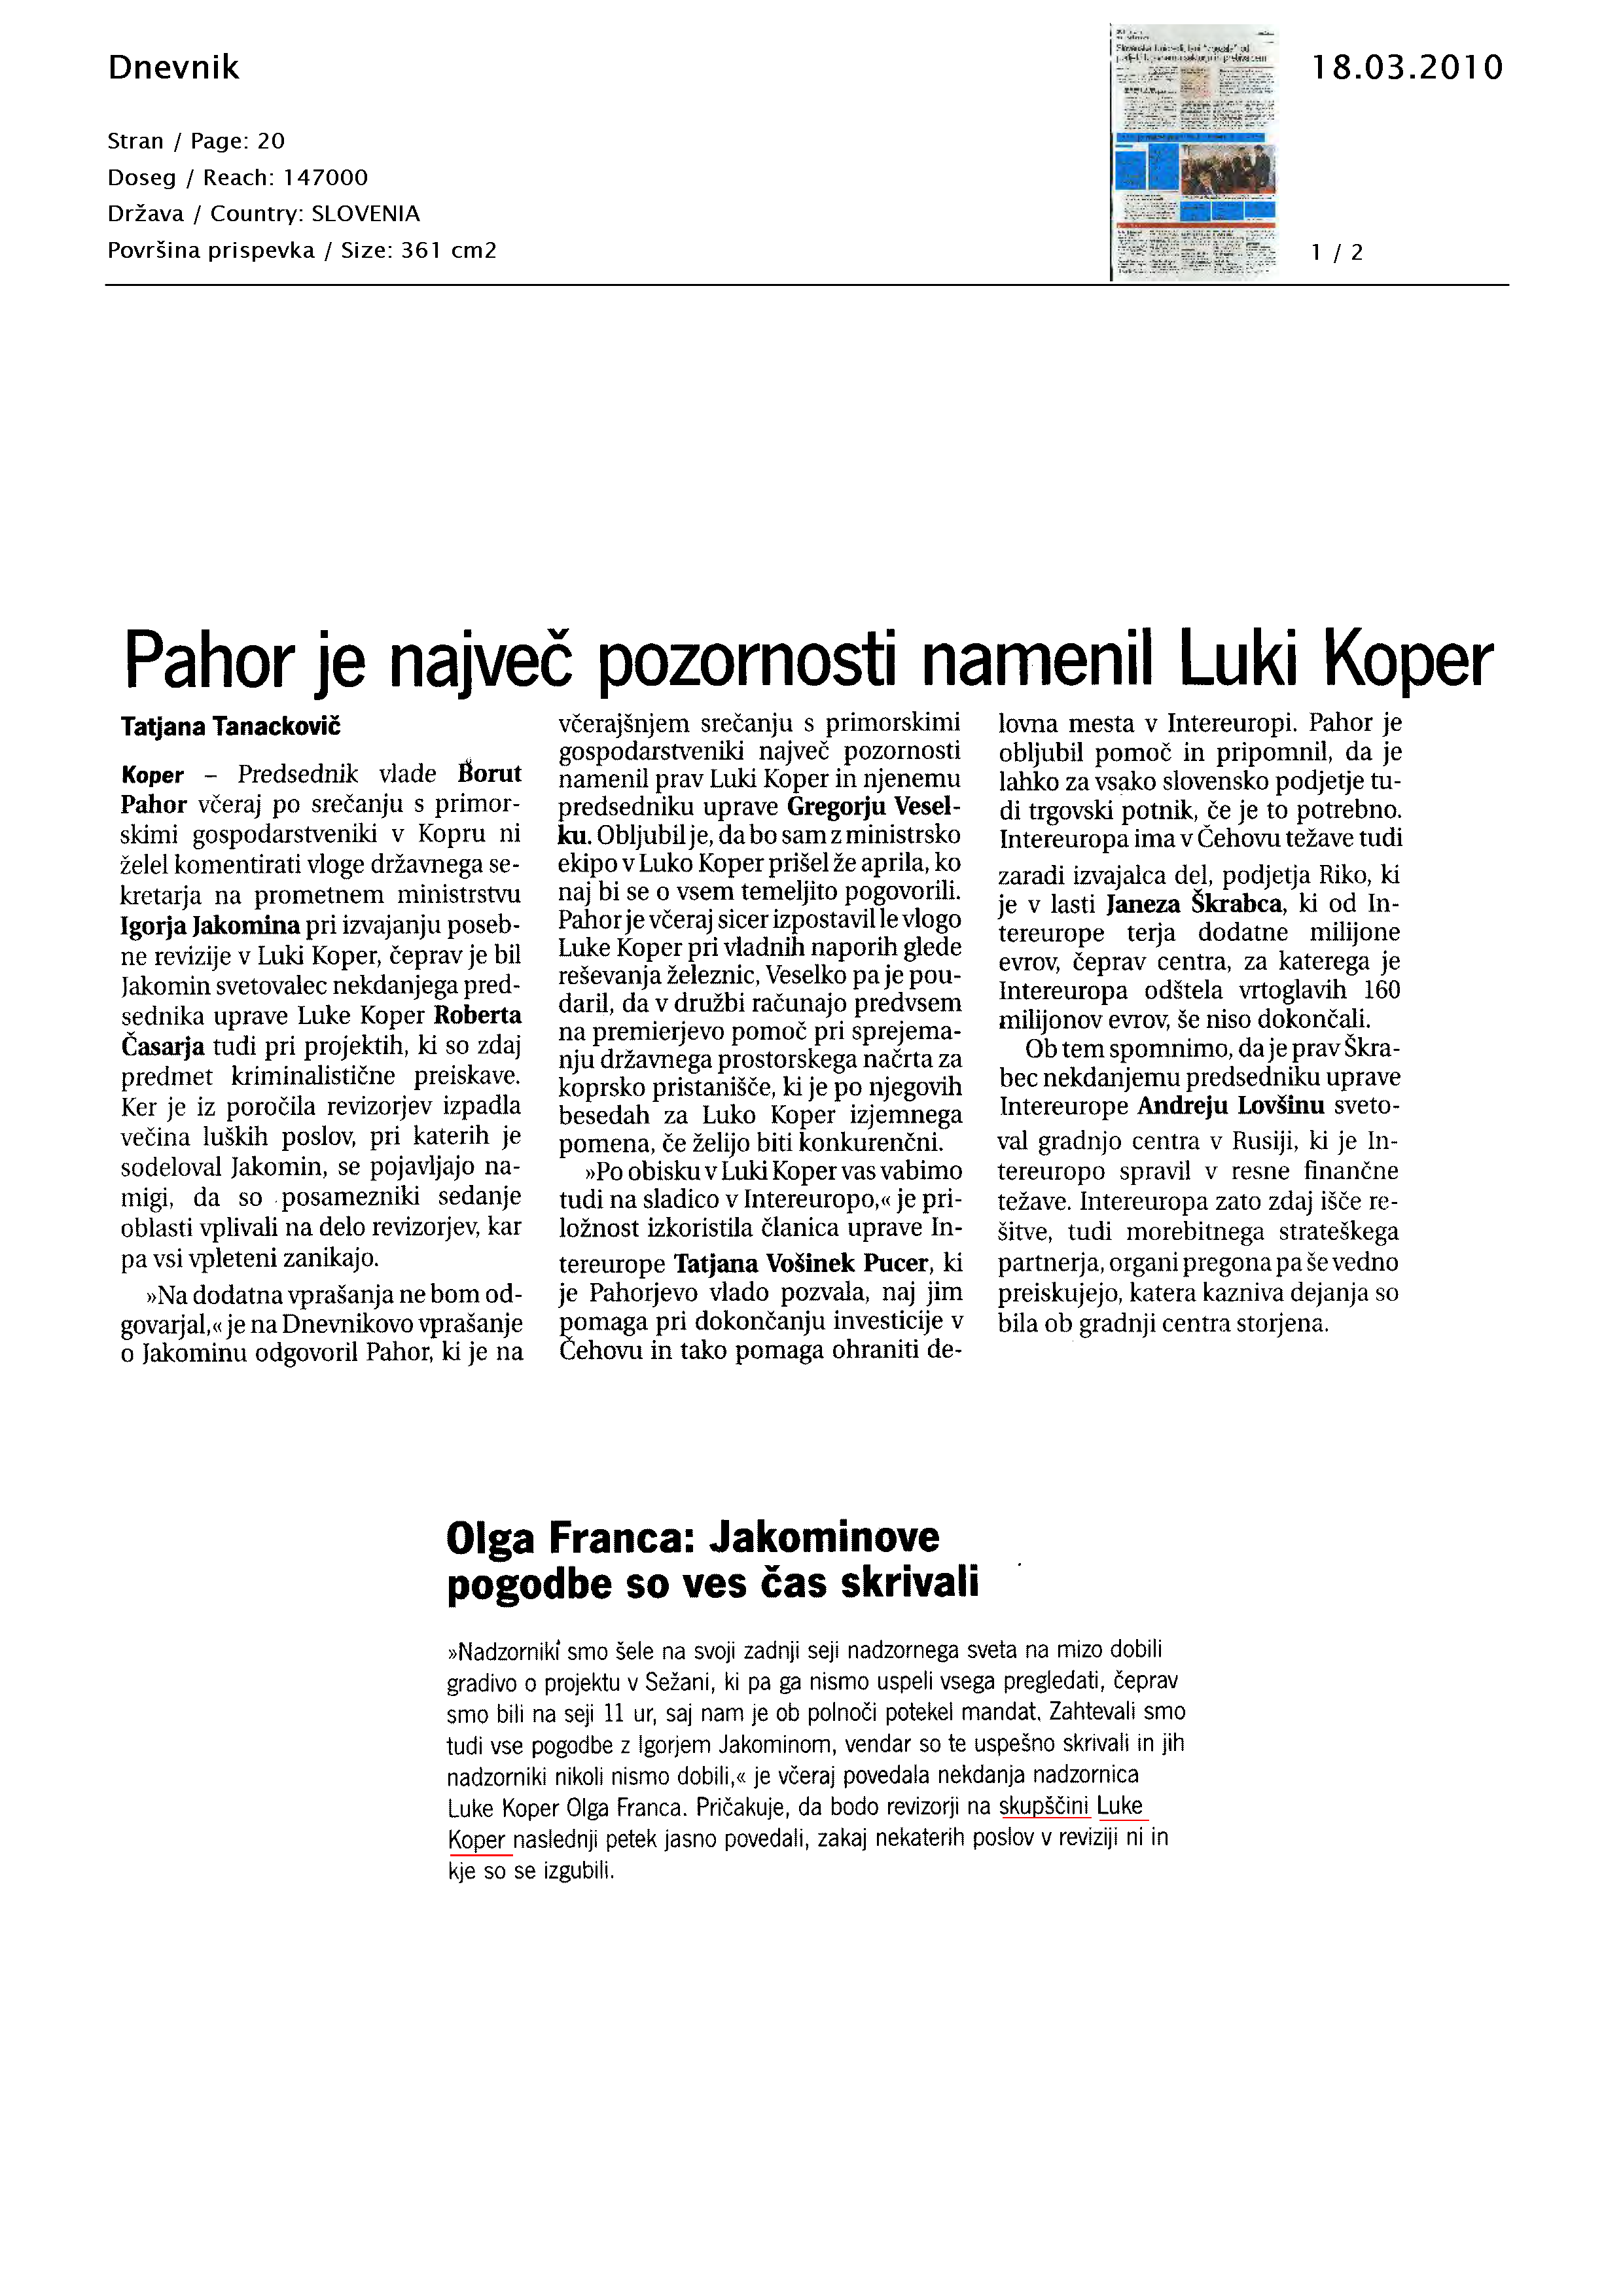 Pahor_je_najve_pozornosti_namenil_Luki_Koper_Page_1